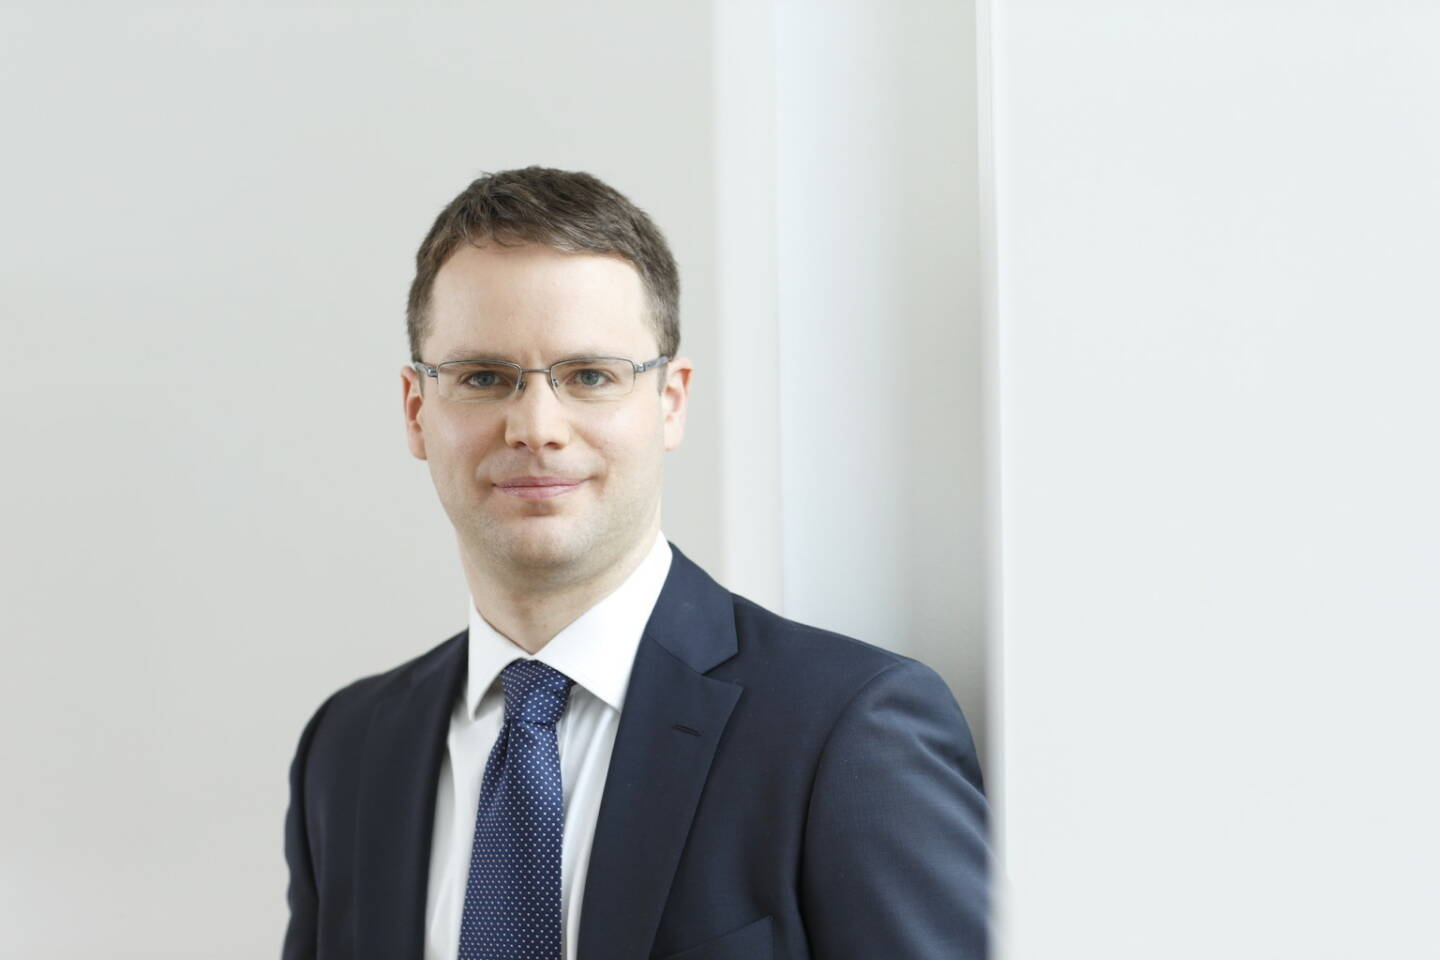 Moritz Rehmann, Fondsmanager des GAMAX Junior sowie Analyst u.a. für die Sektoren Financial Services und Versicherungen bei der DJE Kapital AG; Credit: DJE